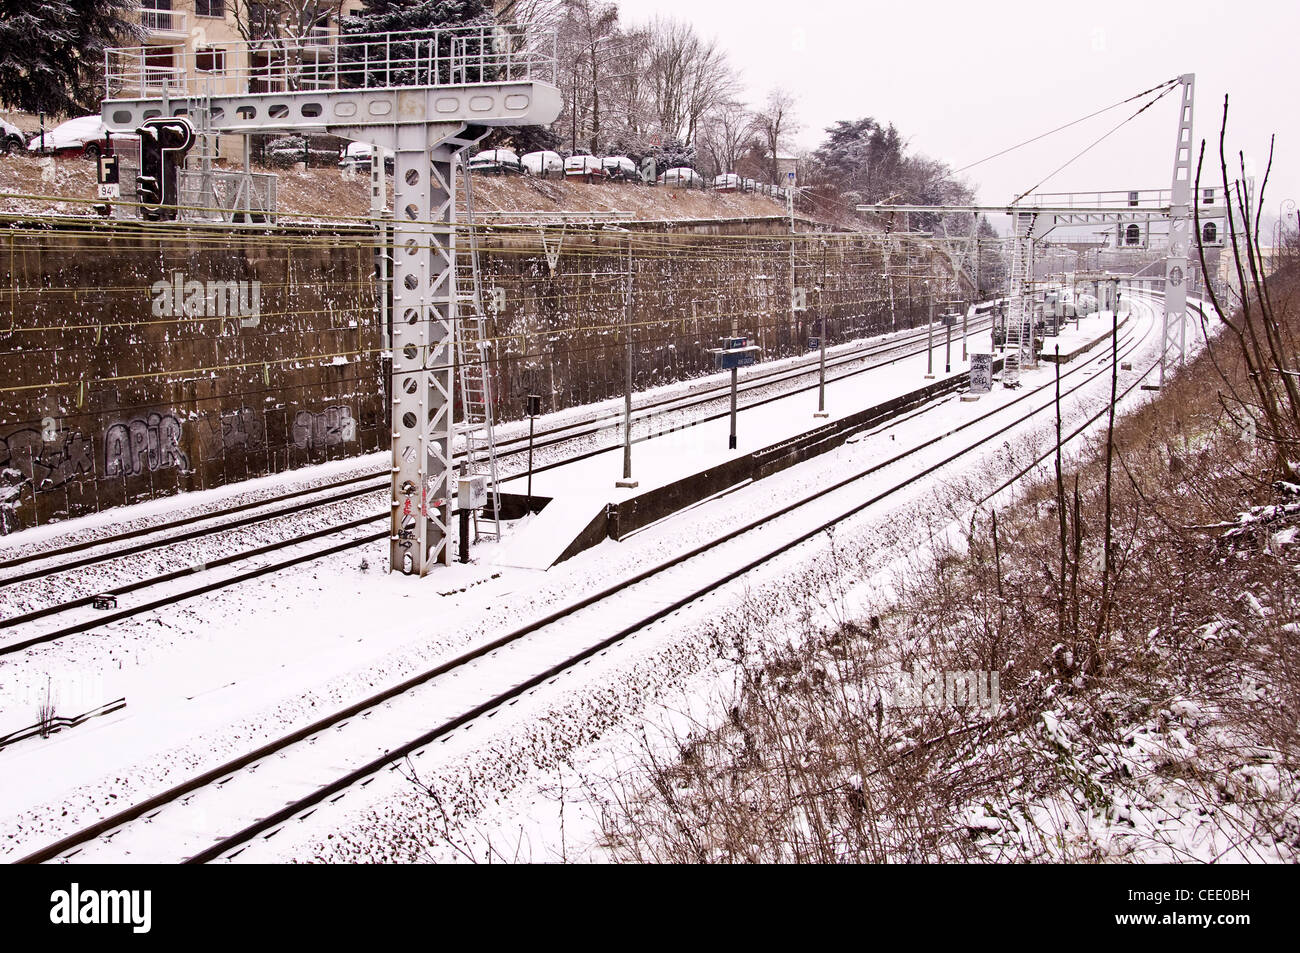 Stazione ferroviaria coperte di neve - Sèvres, nei pressi di Parigi (Francia) Foto Stock